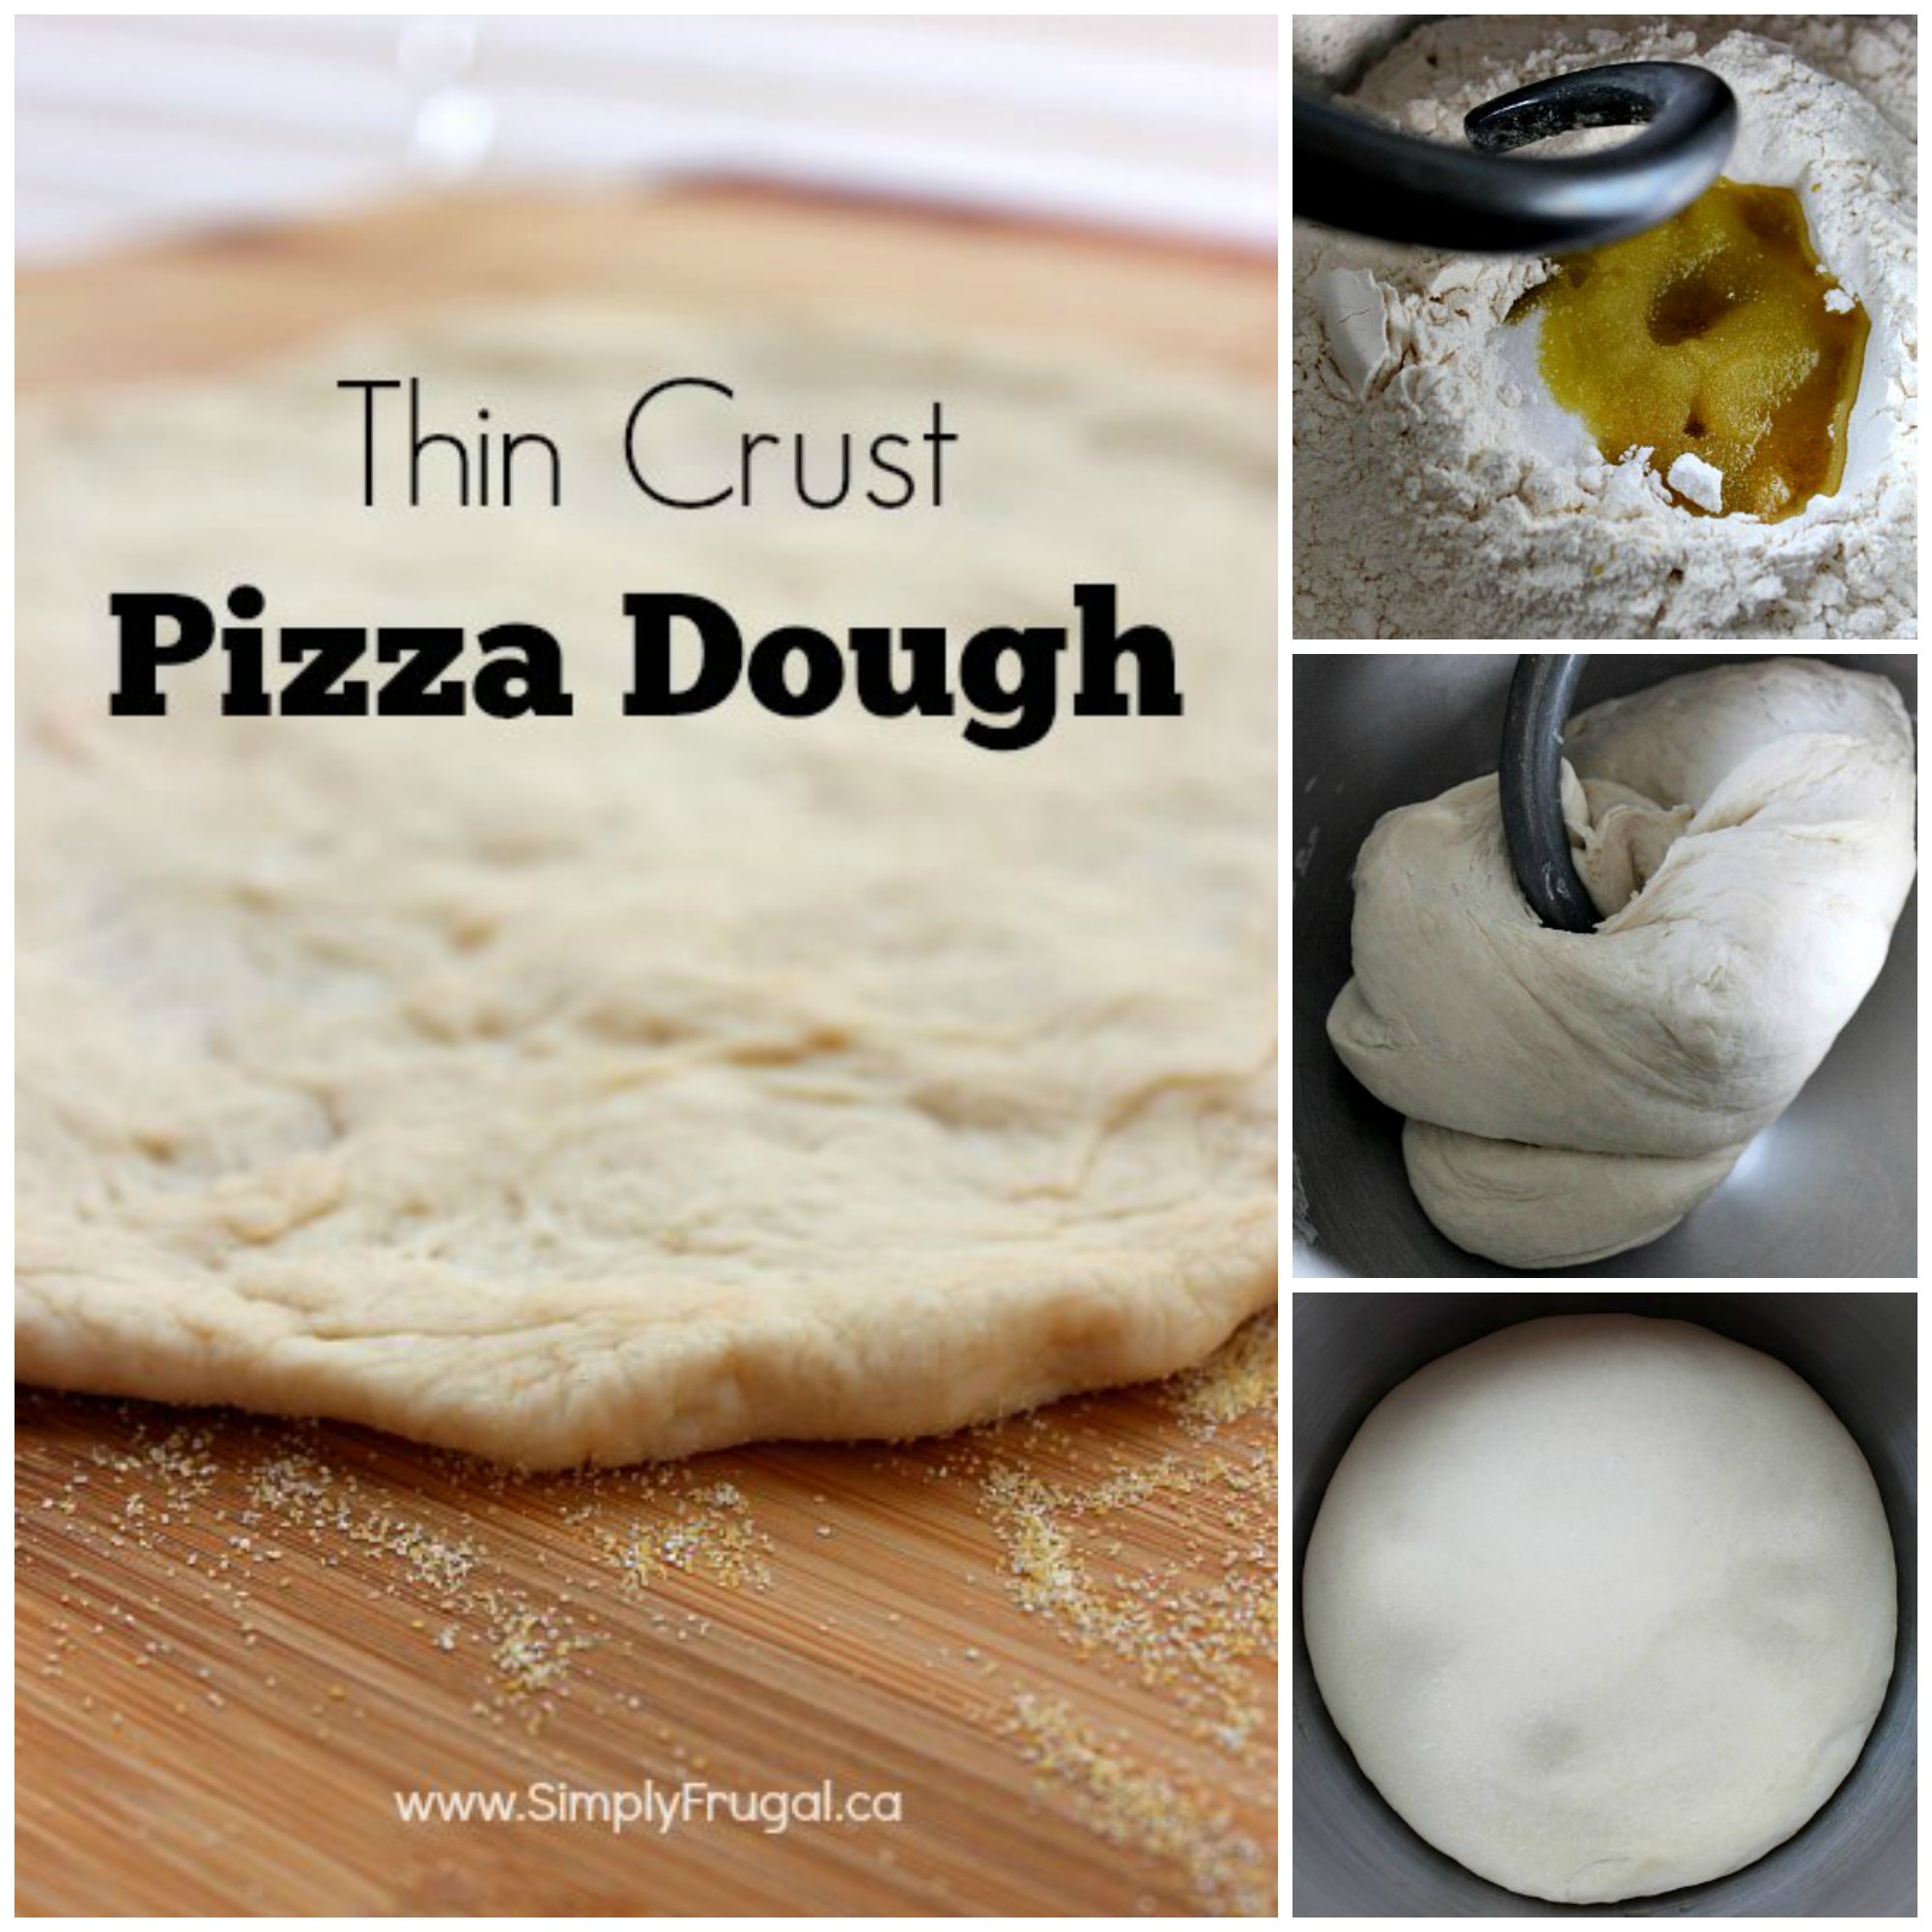 Thin Crust Pizza Dough recipe!